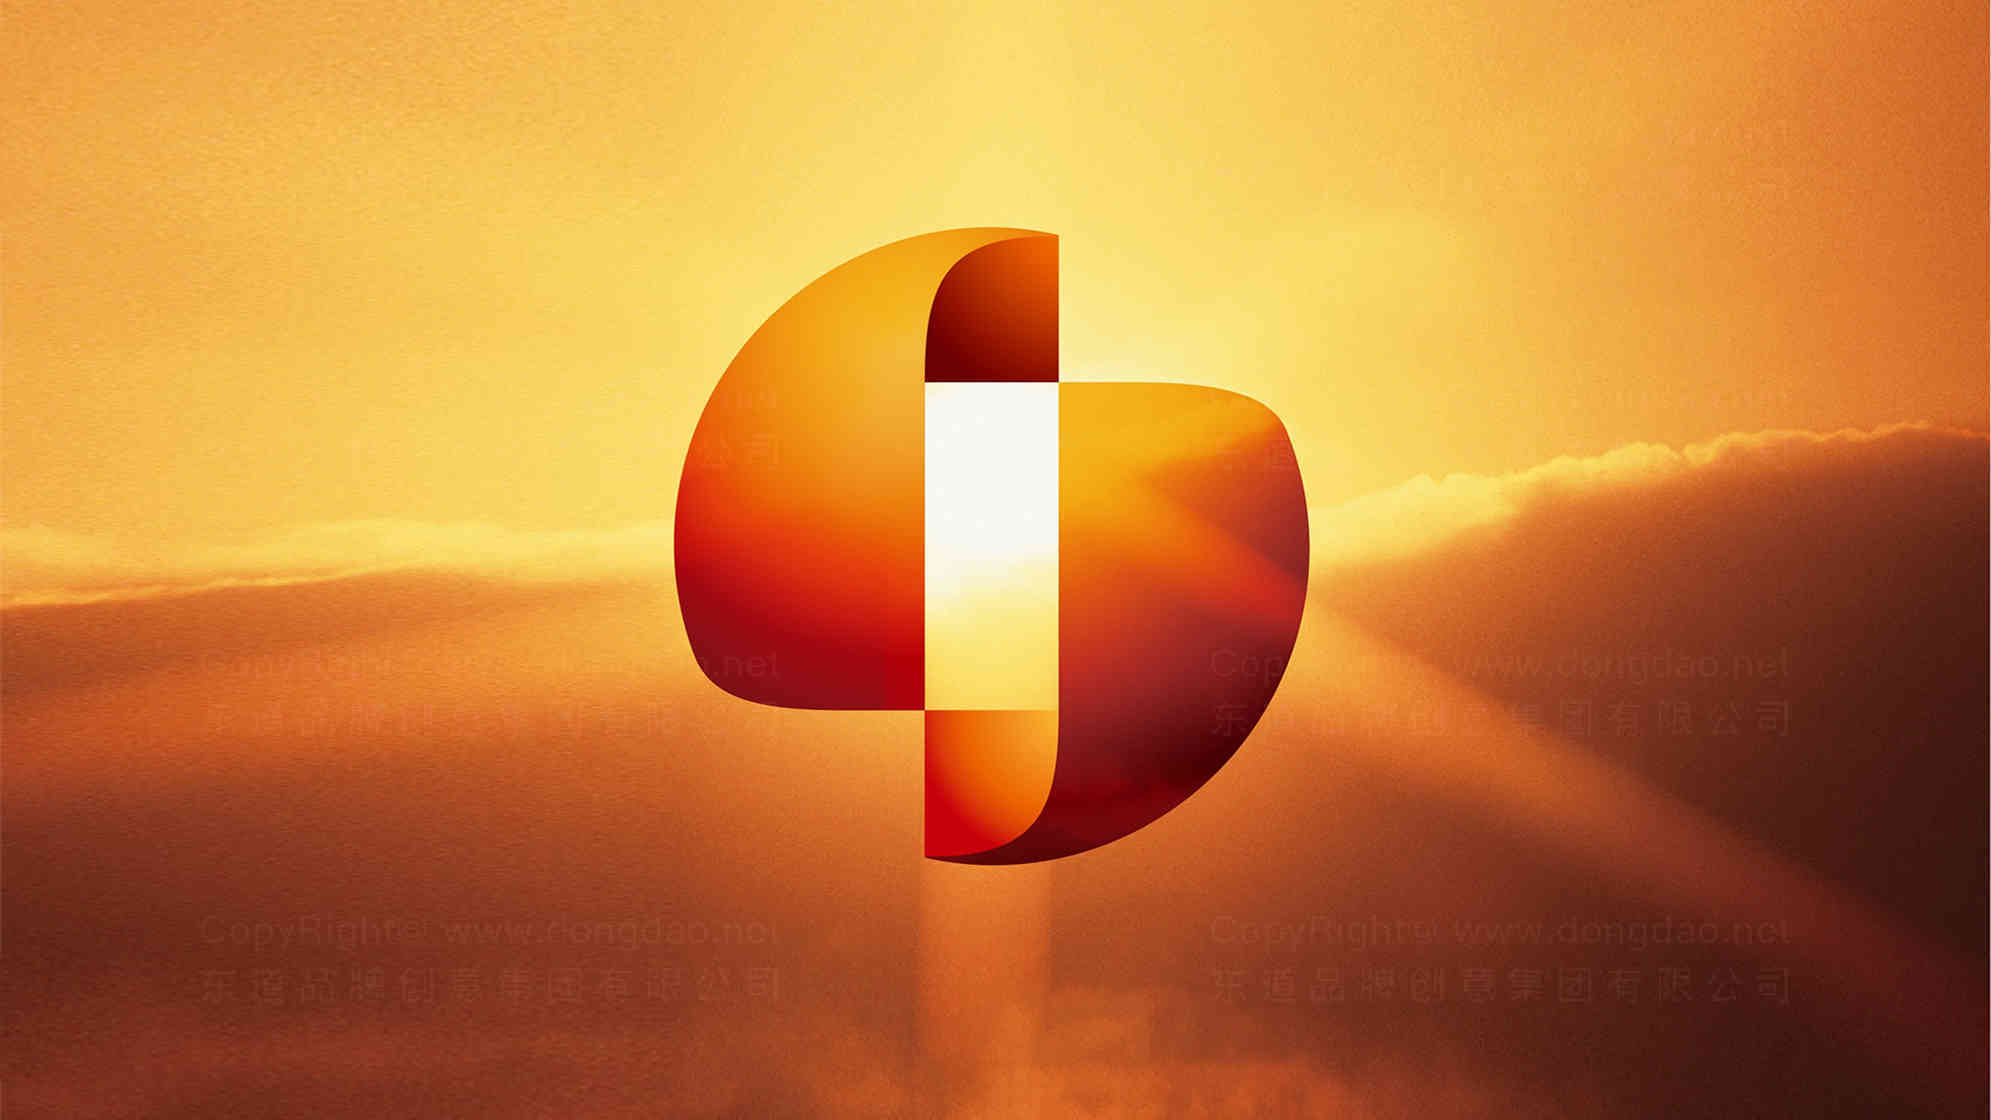 中国保信企业logo设计图片素材